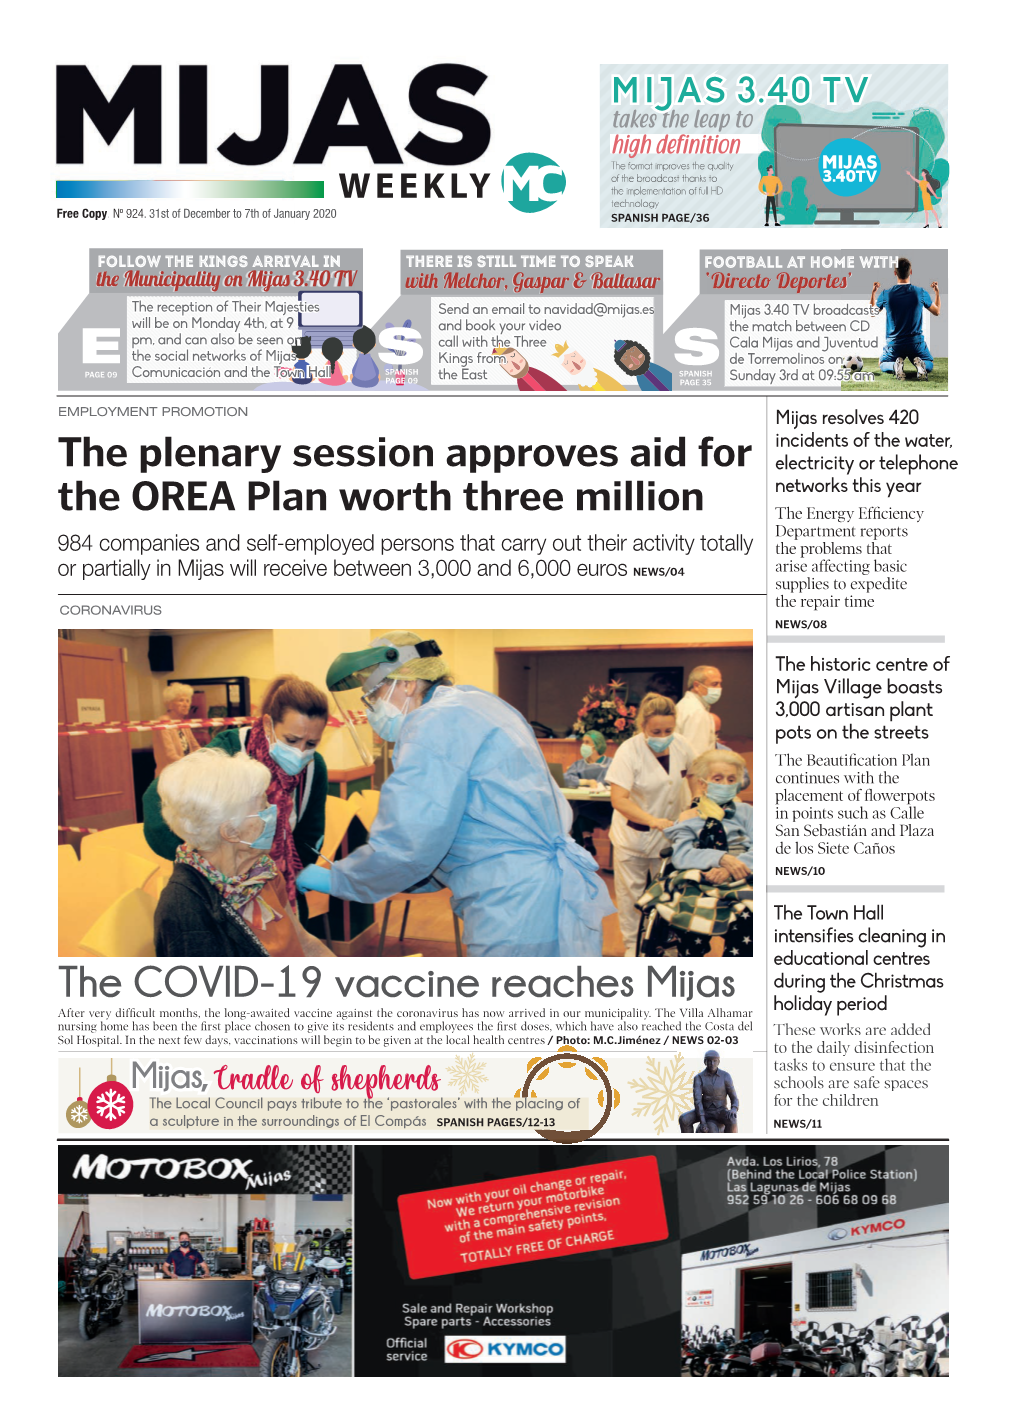 The COVID-1 9 Vaccine Reaches Mijas